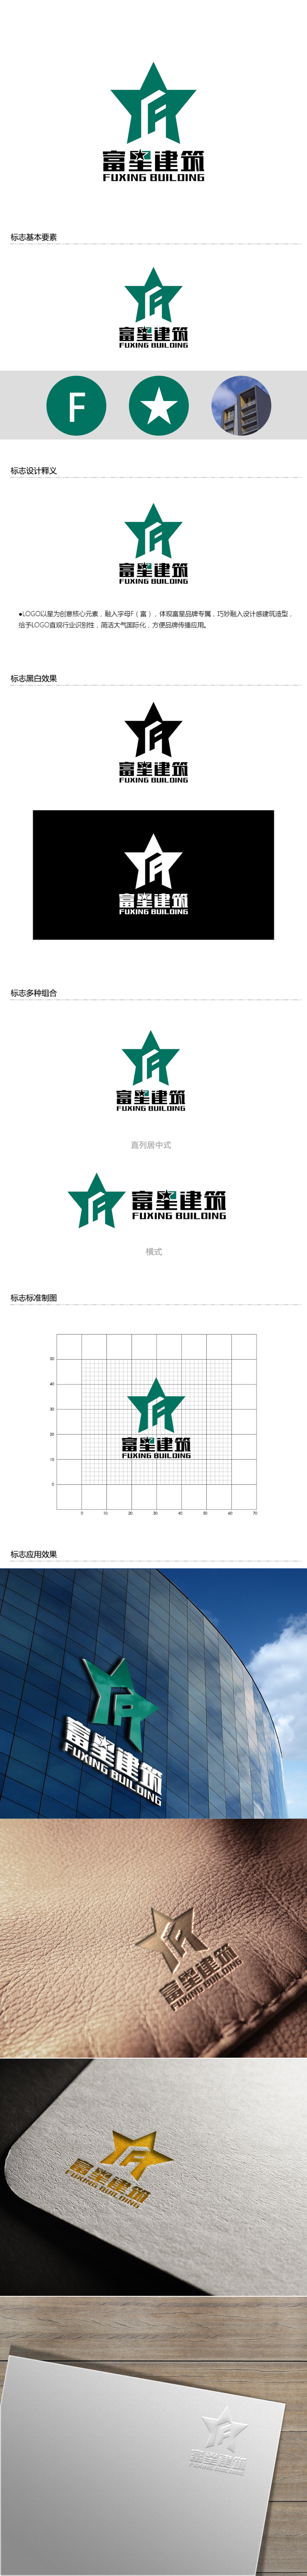 黄安悦的天津富星建筑工程有限公司logo设计